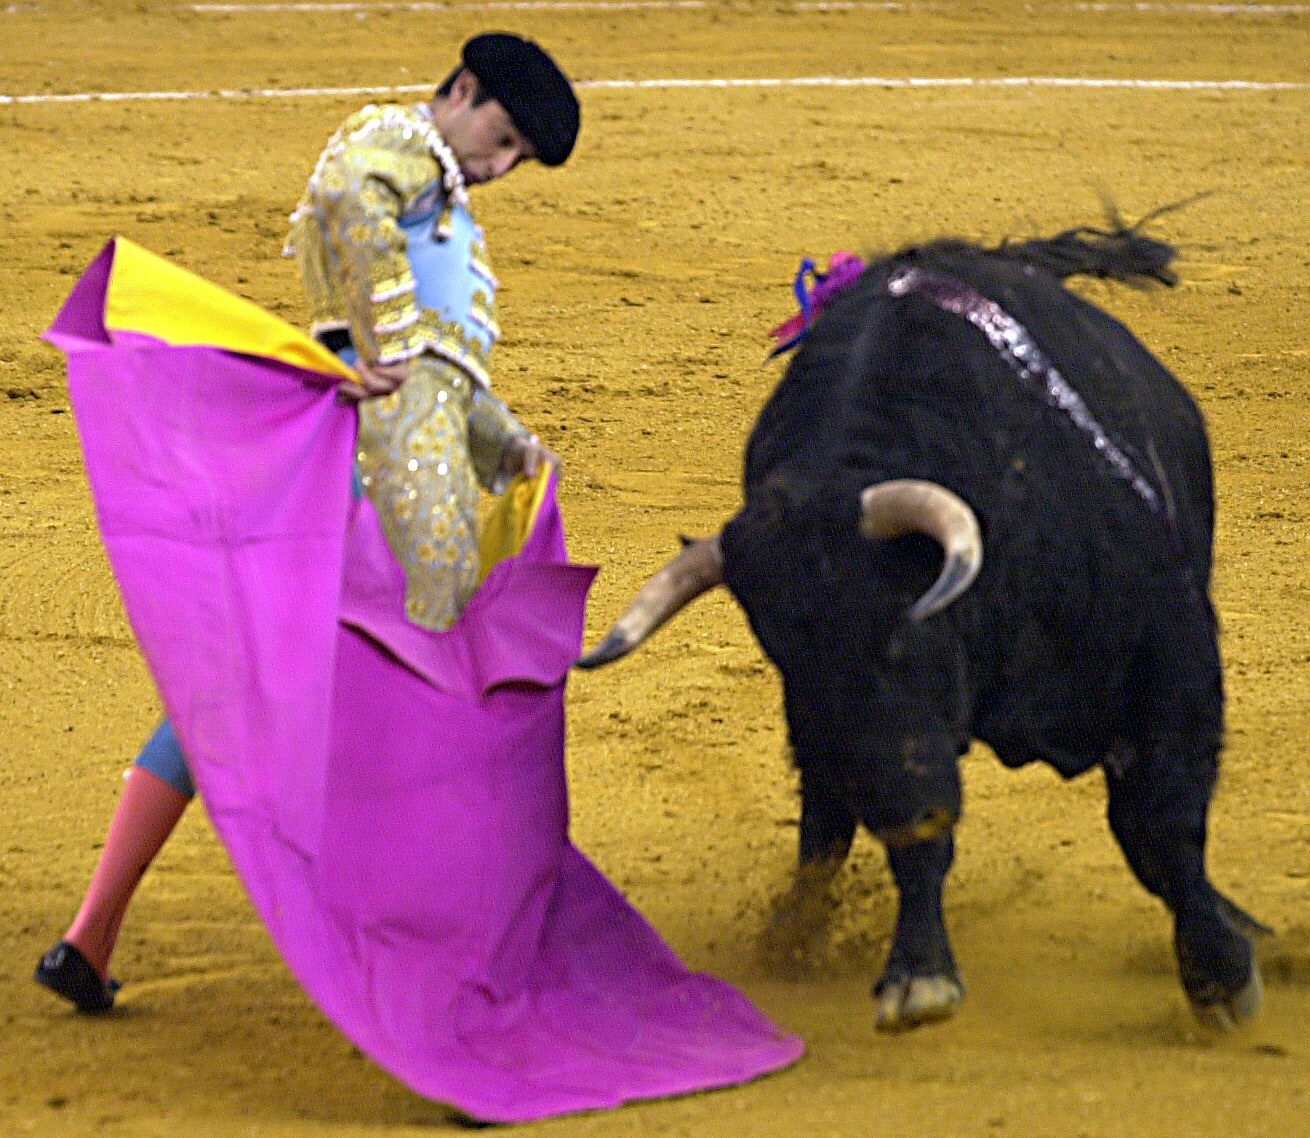 L'Ajuntament de Madrid perd els papers: 30.000 euros per als toros i premis taurins